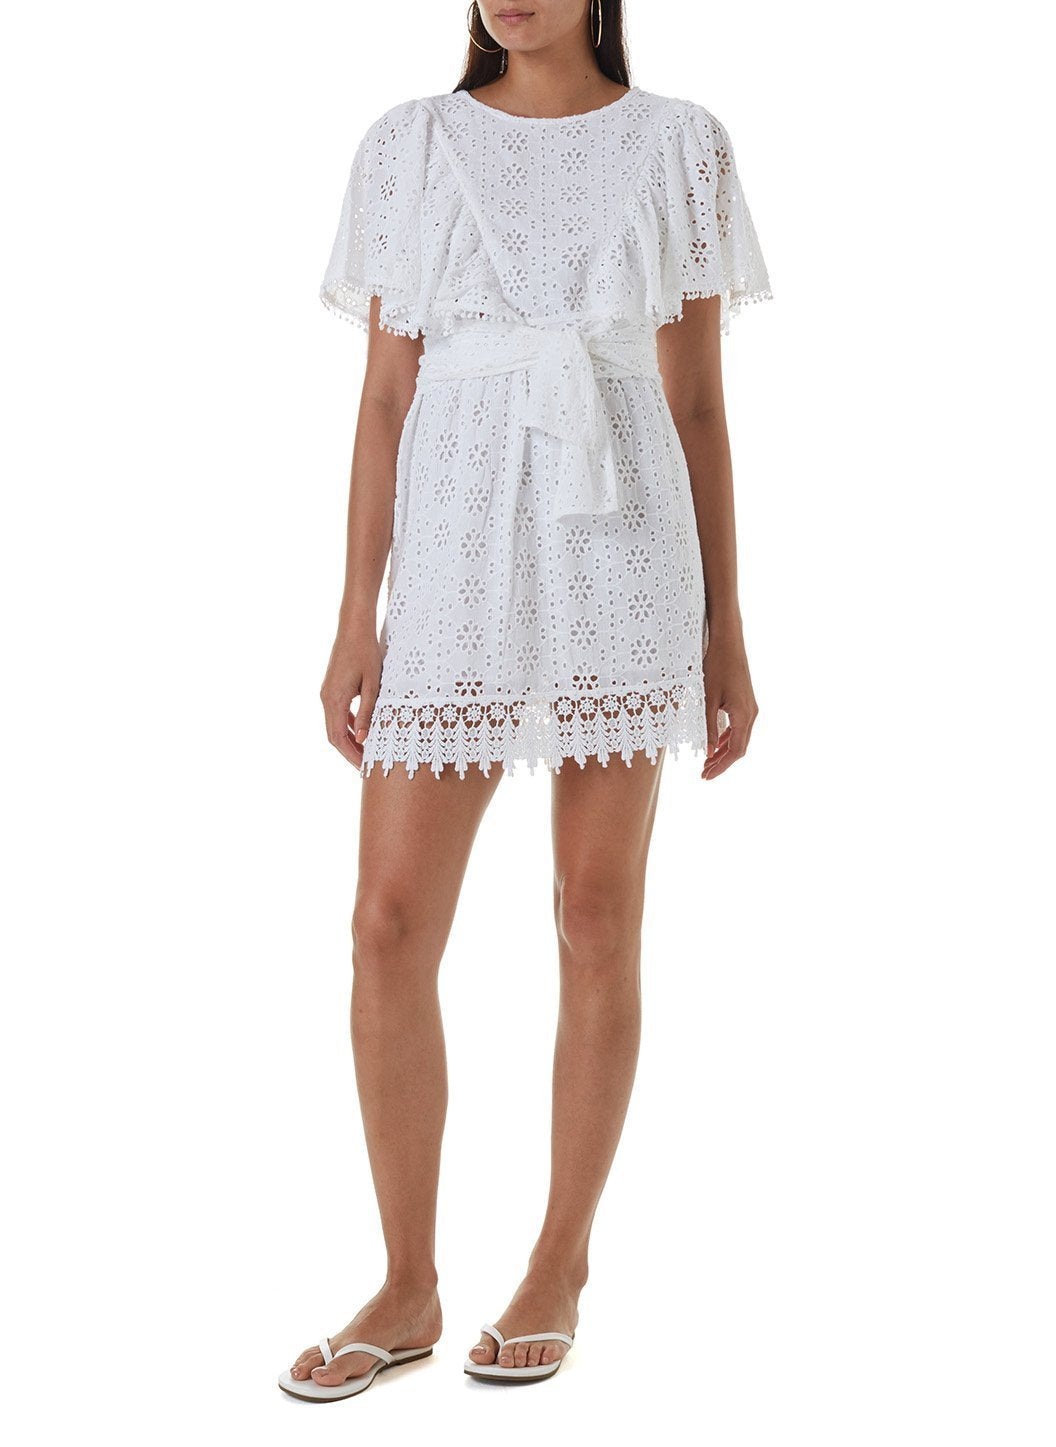 kara white short dress 